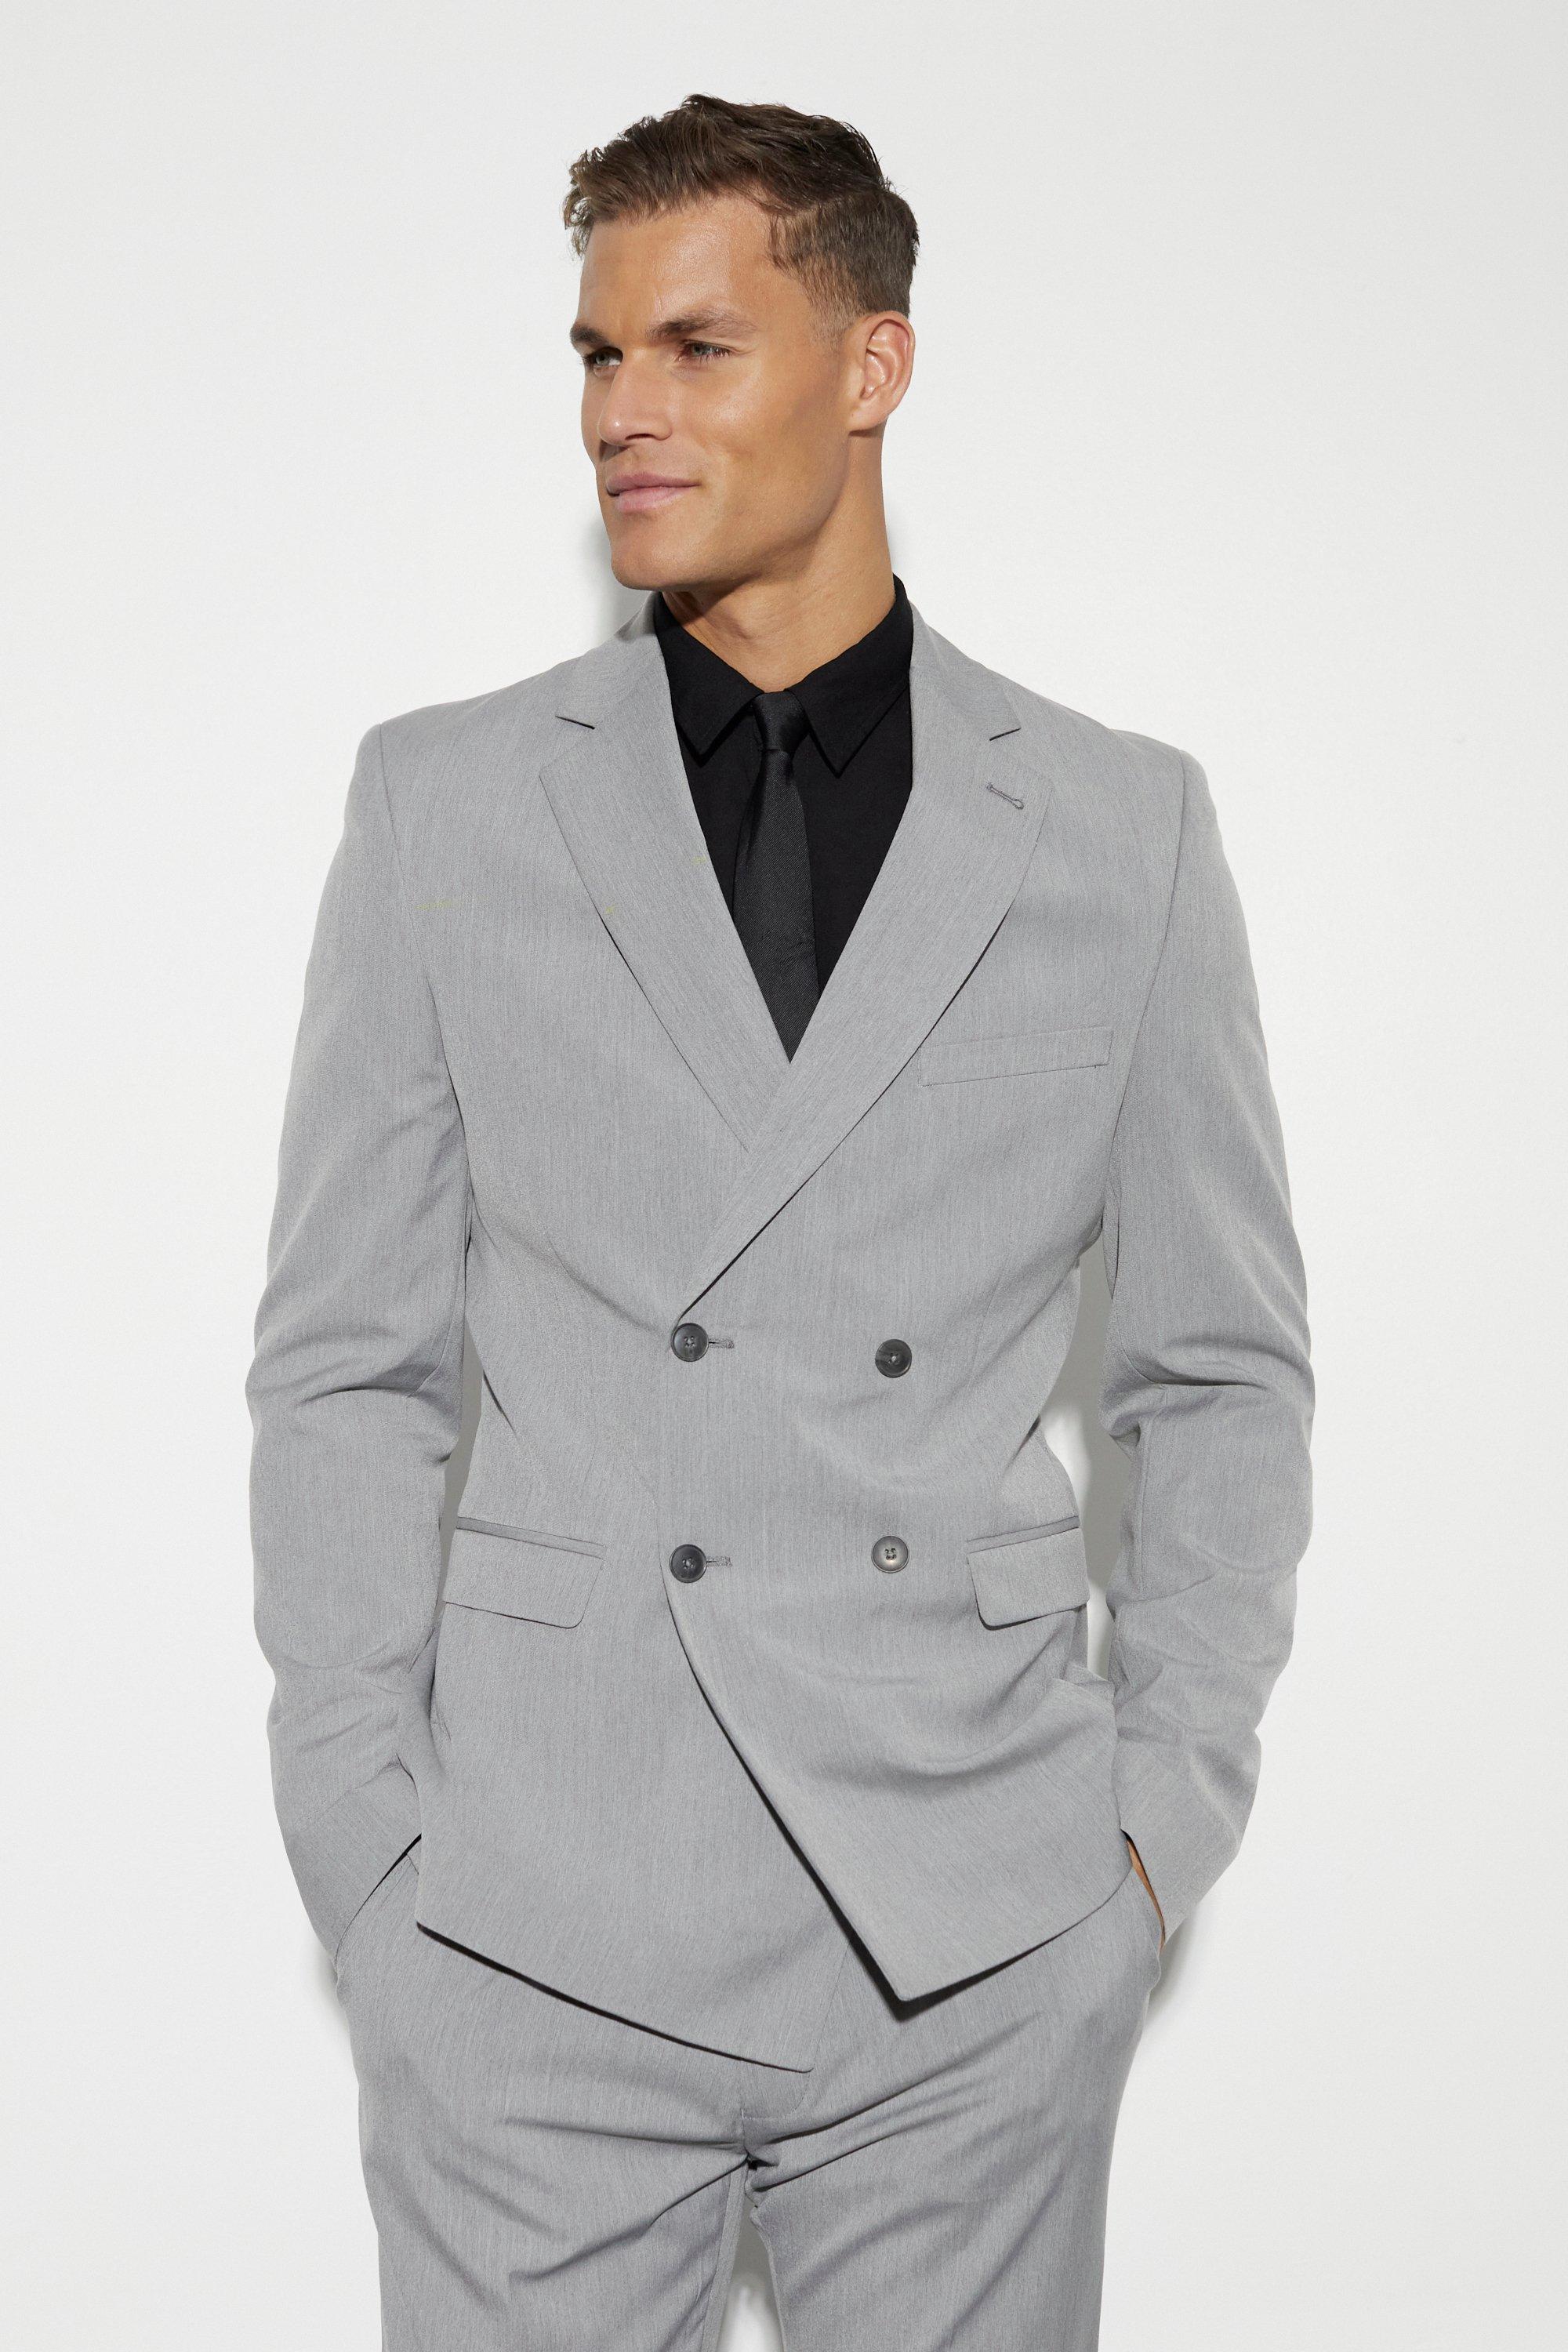 tall - veste de costume cintrée homme - gris - 40, gris